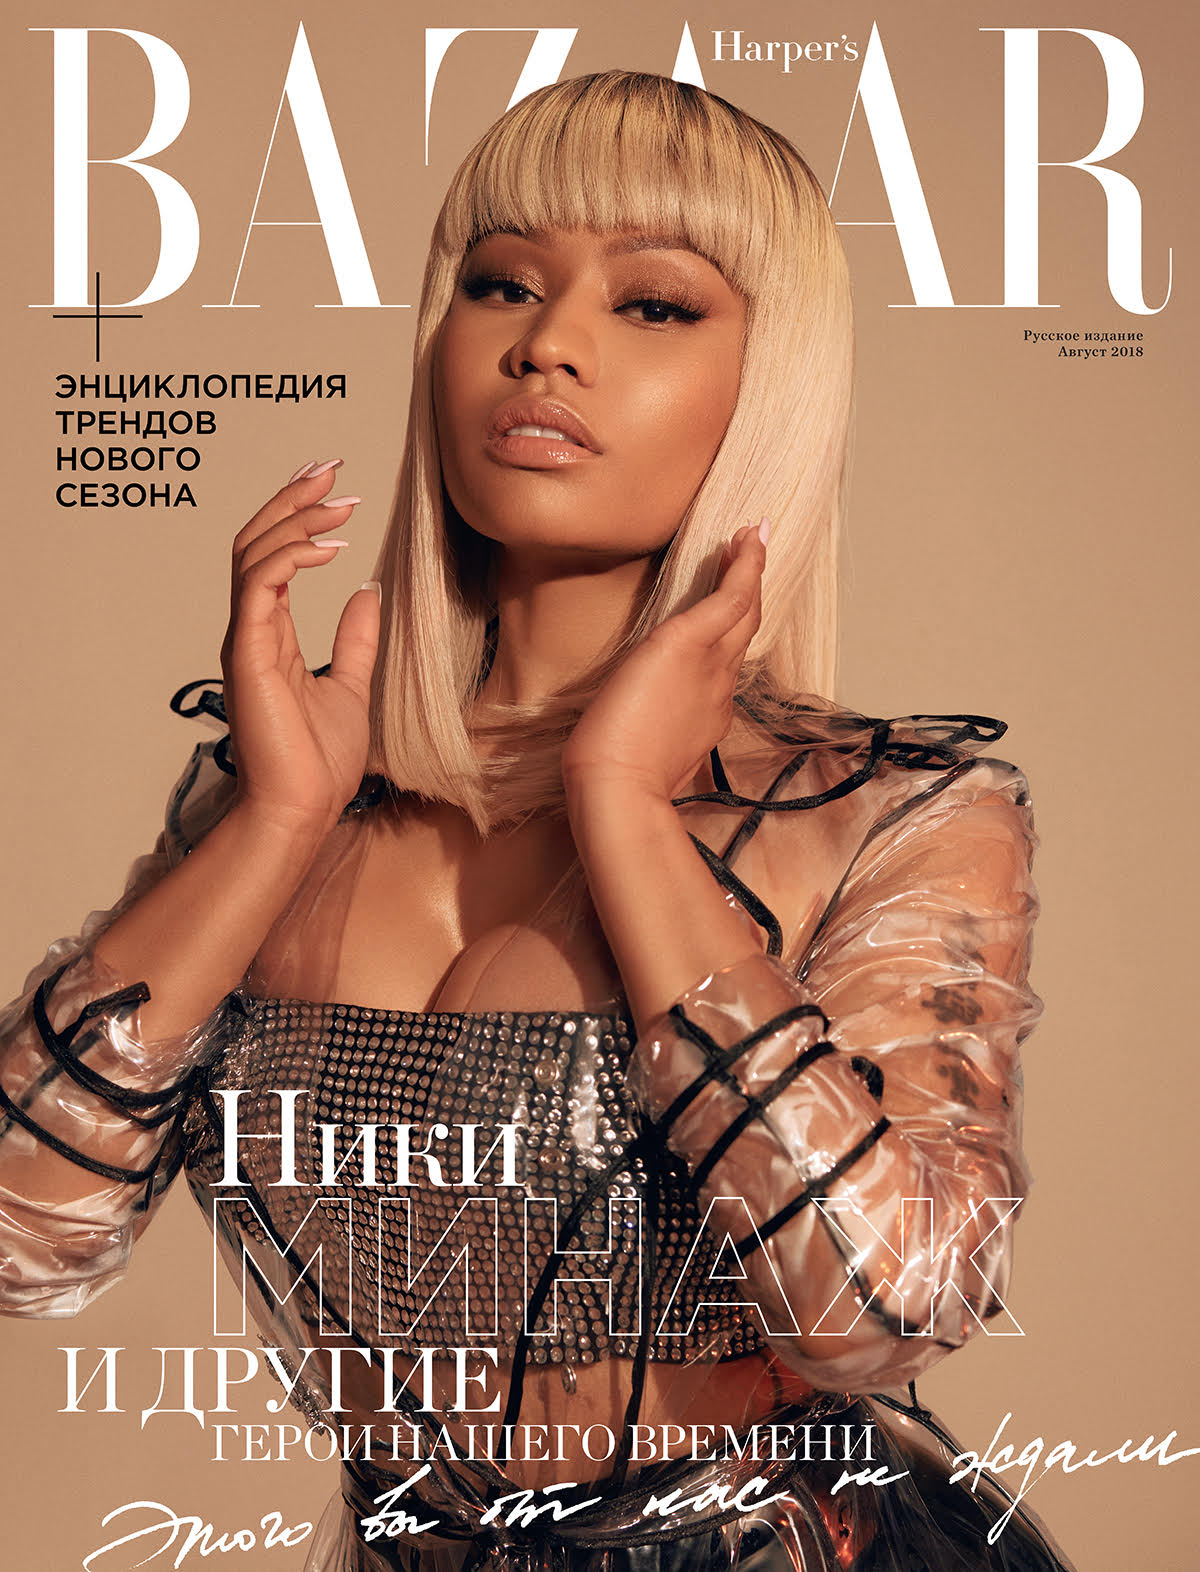 Harper's Bazaar - August 2018